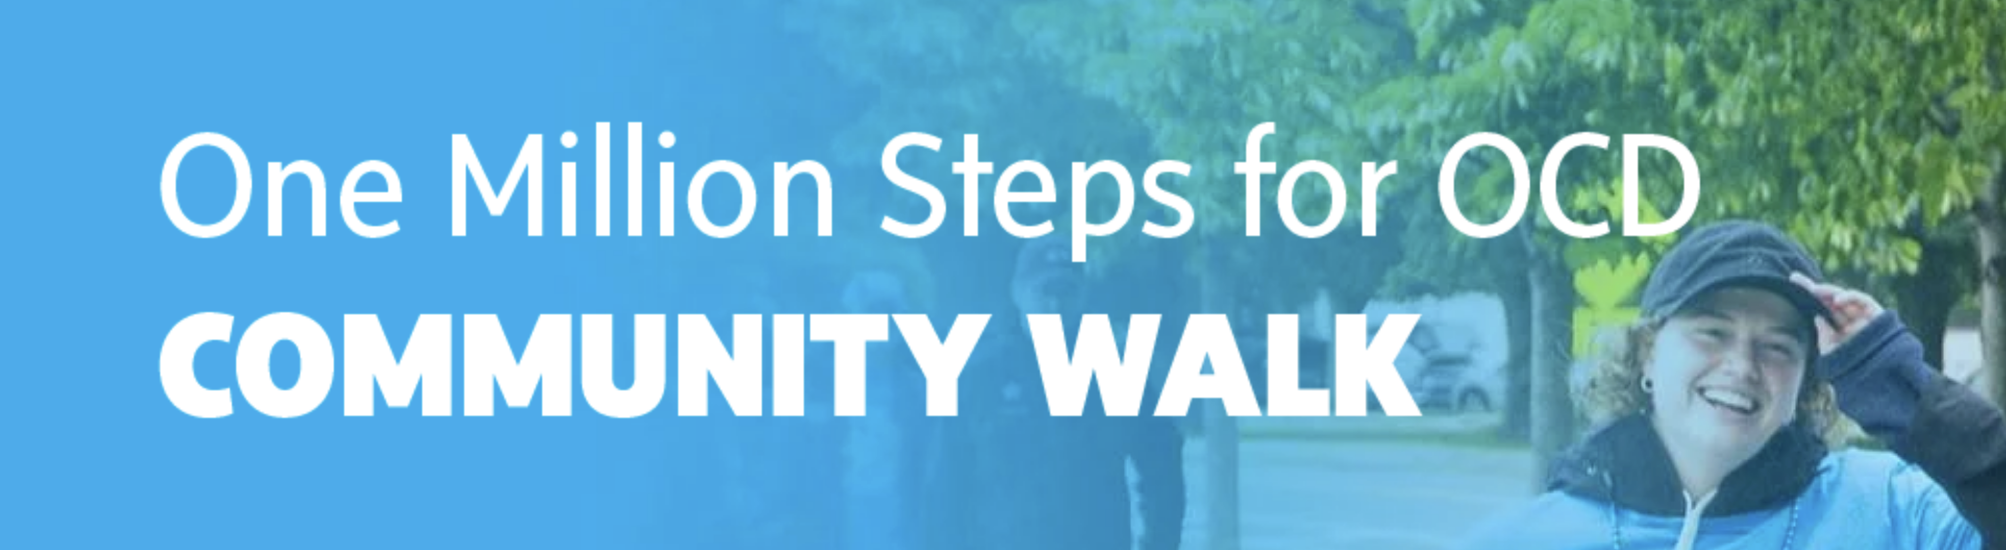 One Million Steps of OCD Community Walk banner